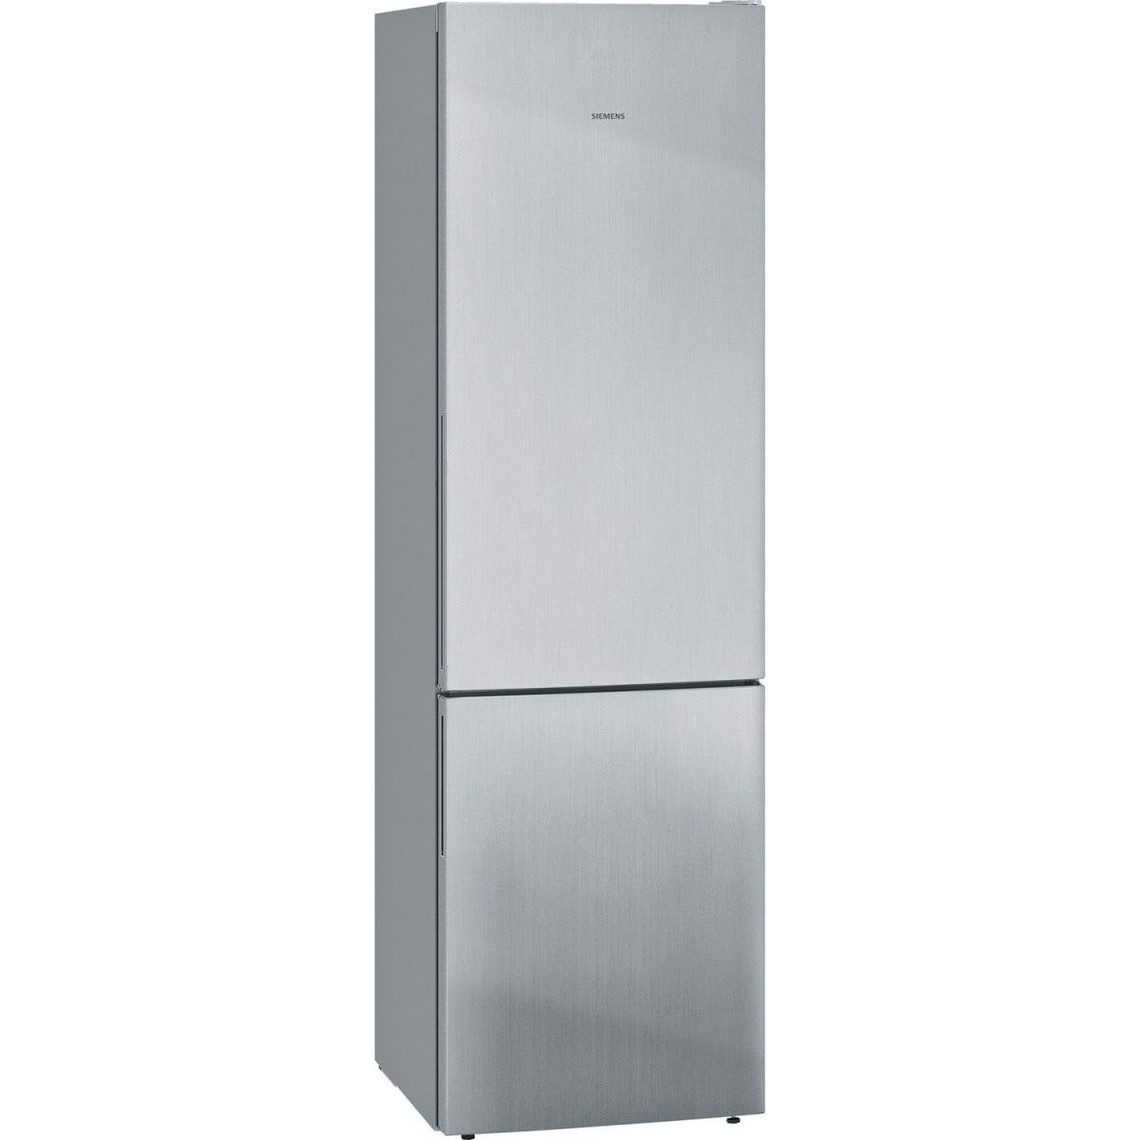 Siemens Réfrigérateur combiné 60cm 337l lowfrost inox - kg39eaica - SIEMENS